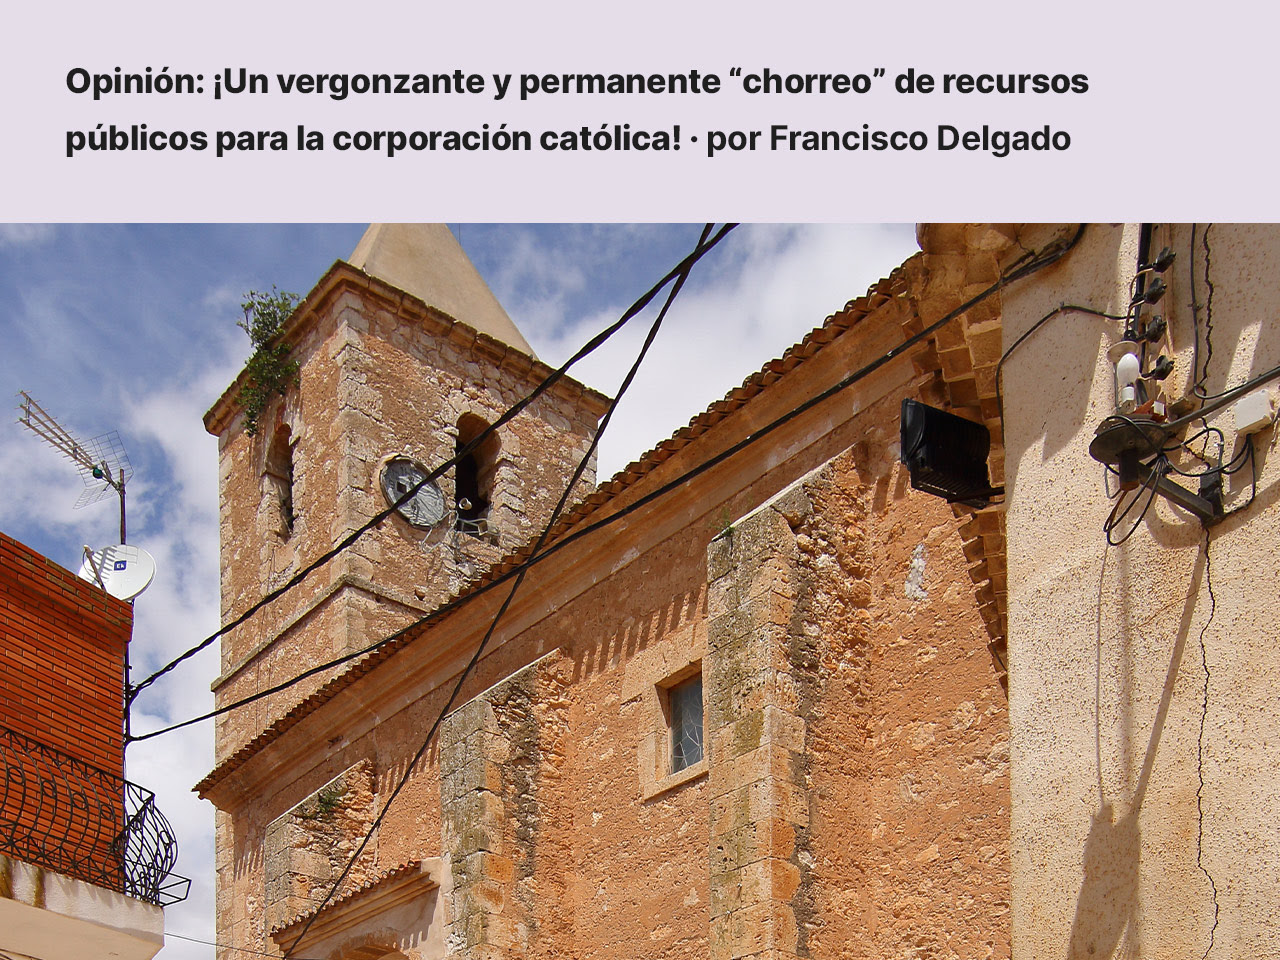 ¡Un vergonzante y permanente “chorreo” de recursos públicos para la corporación católica! · por Francisco Delgado